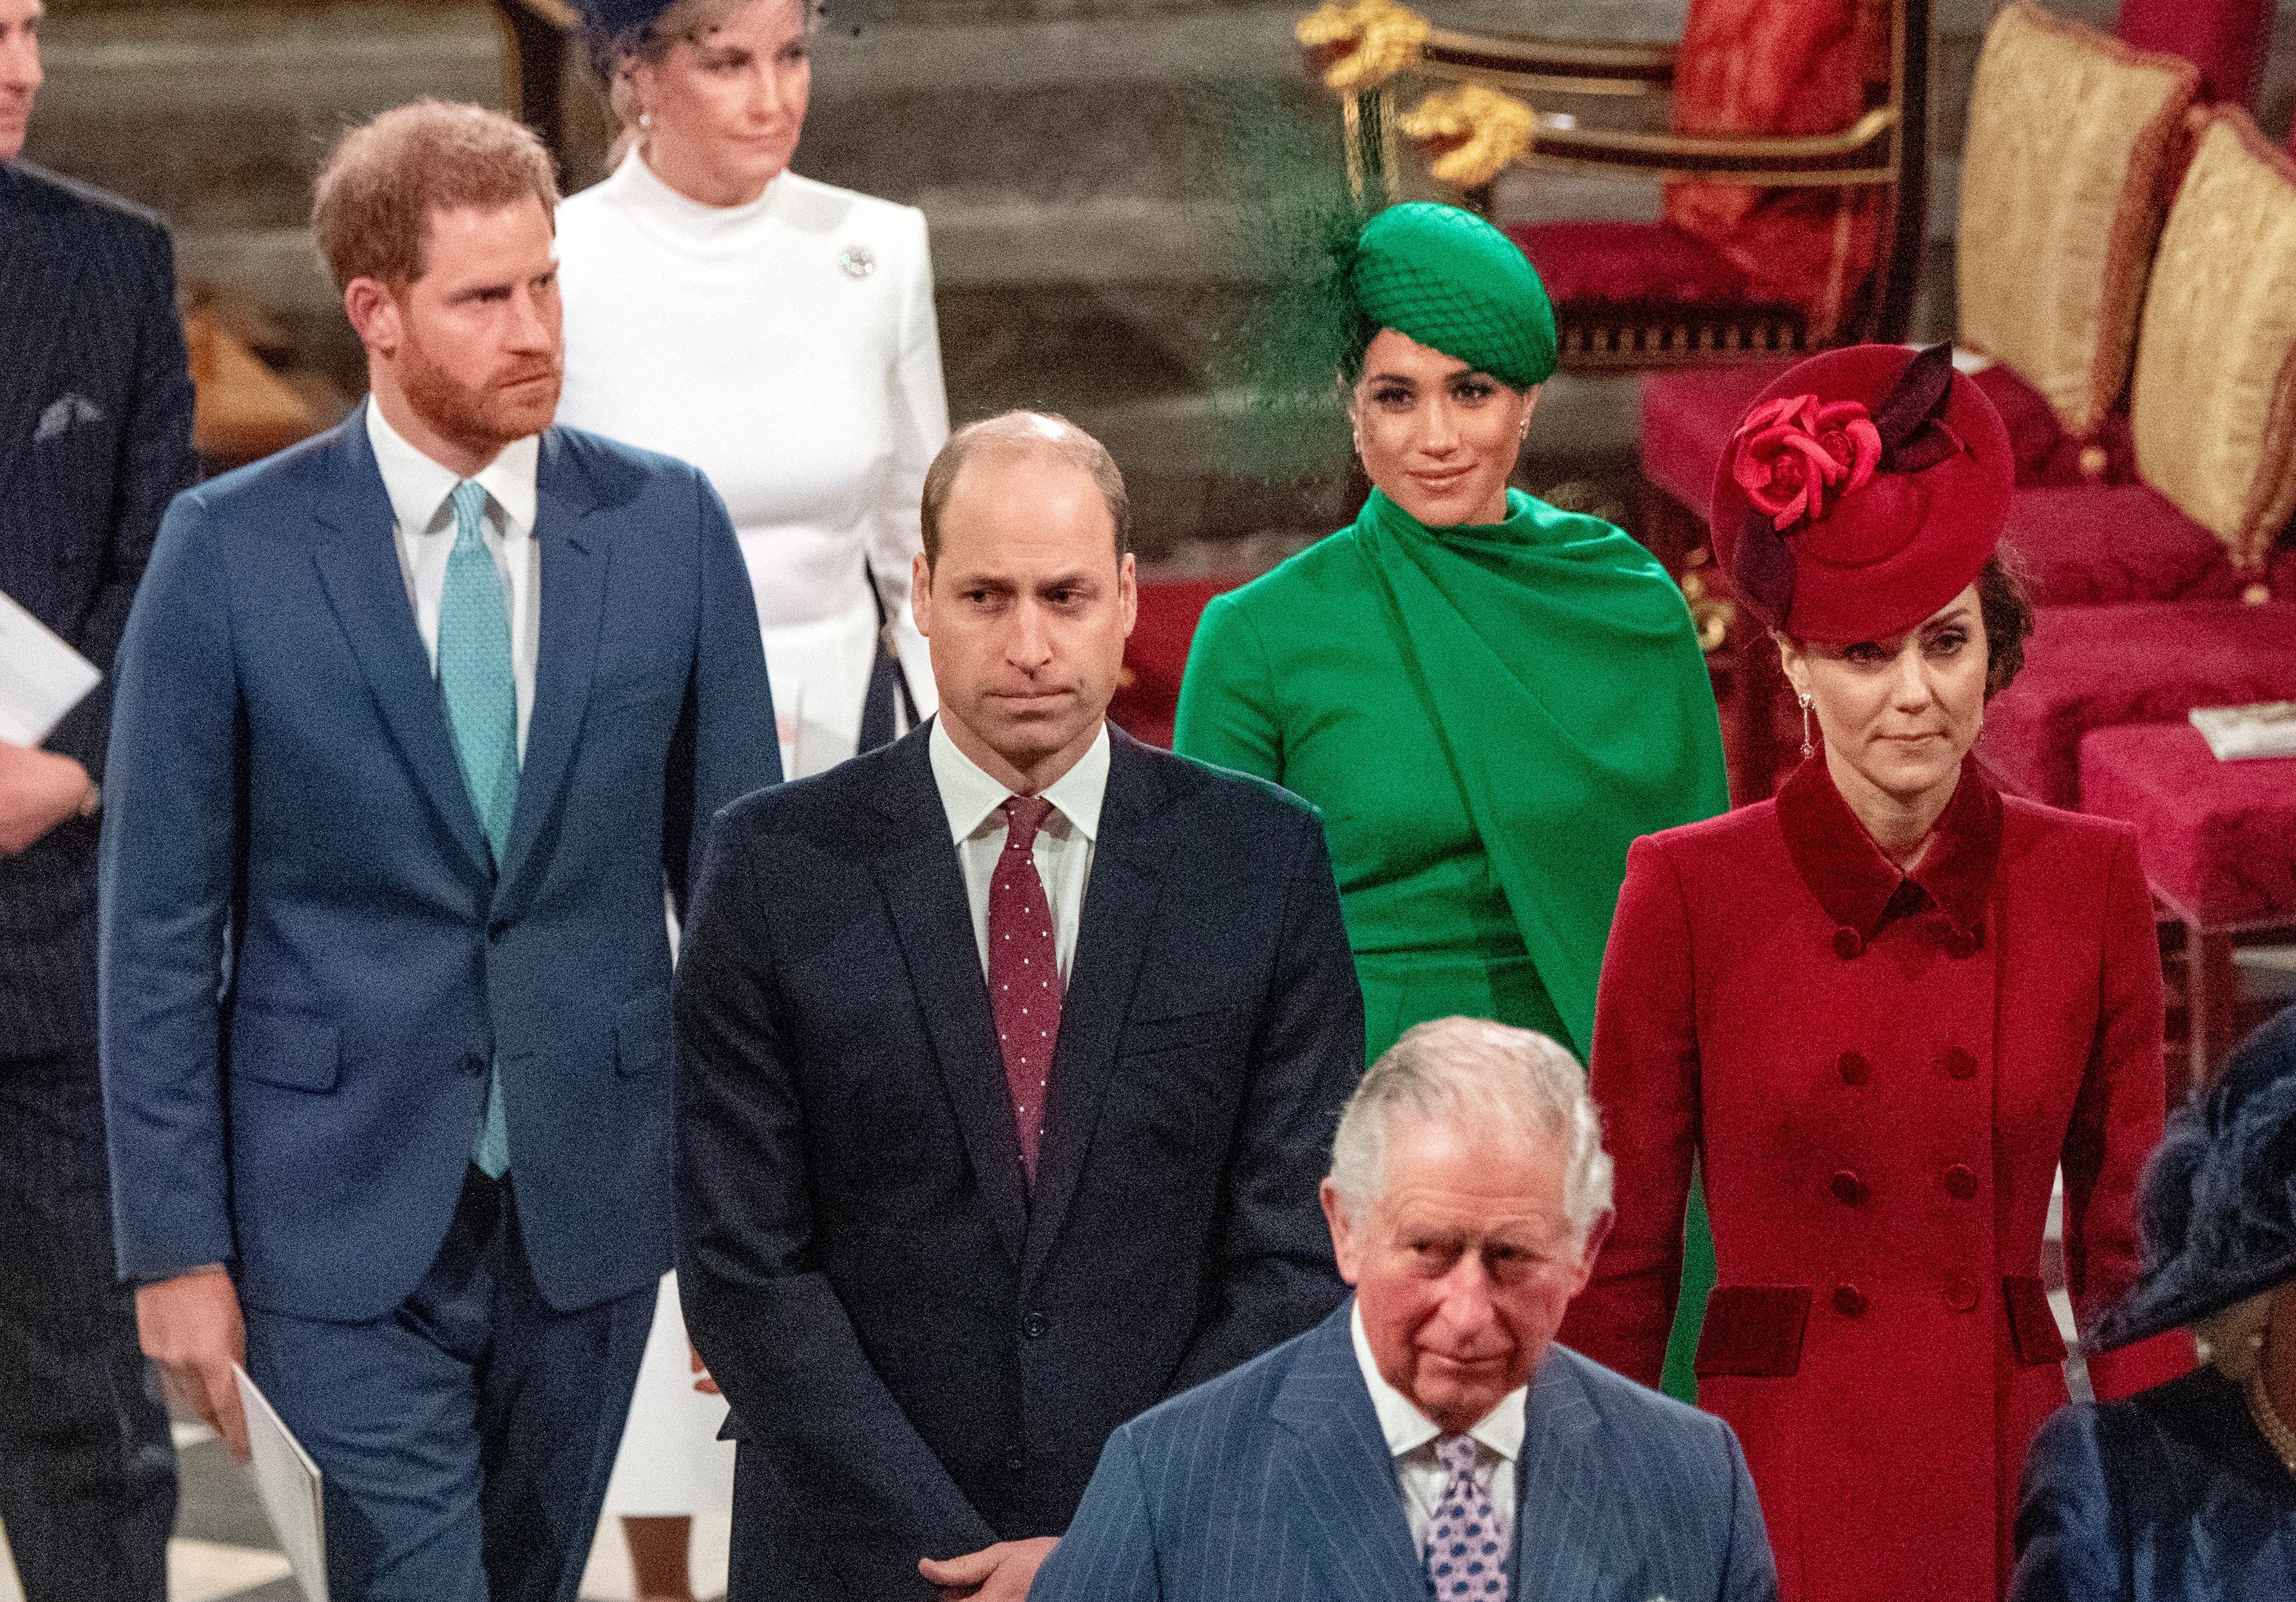 Le prince Harry, duc de Sussex (à gauche) et Meghan, duchesse de Sussex (2e à droite), suivent le prince William, duc de Cambridge (à droite) et Catherine, duchesse de Cambridge (à droite), qui quittent l'abbaye de Westminster après avoir assisté à la cérémonie annuelle du Commonwealth à Londres, le 9 mars 2020. | Source : Getty Images